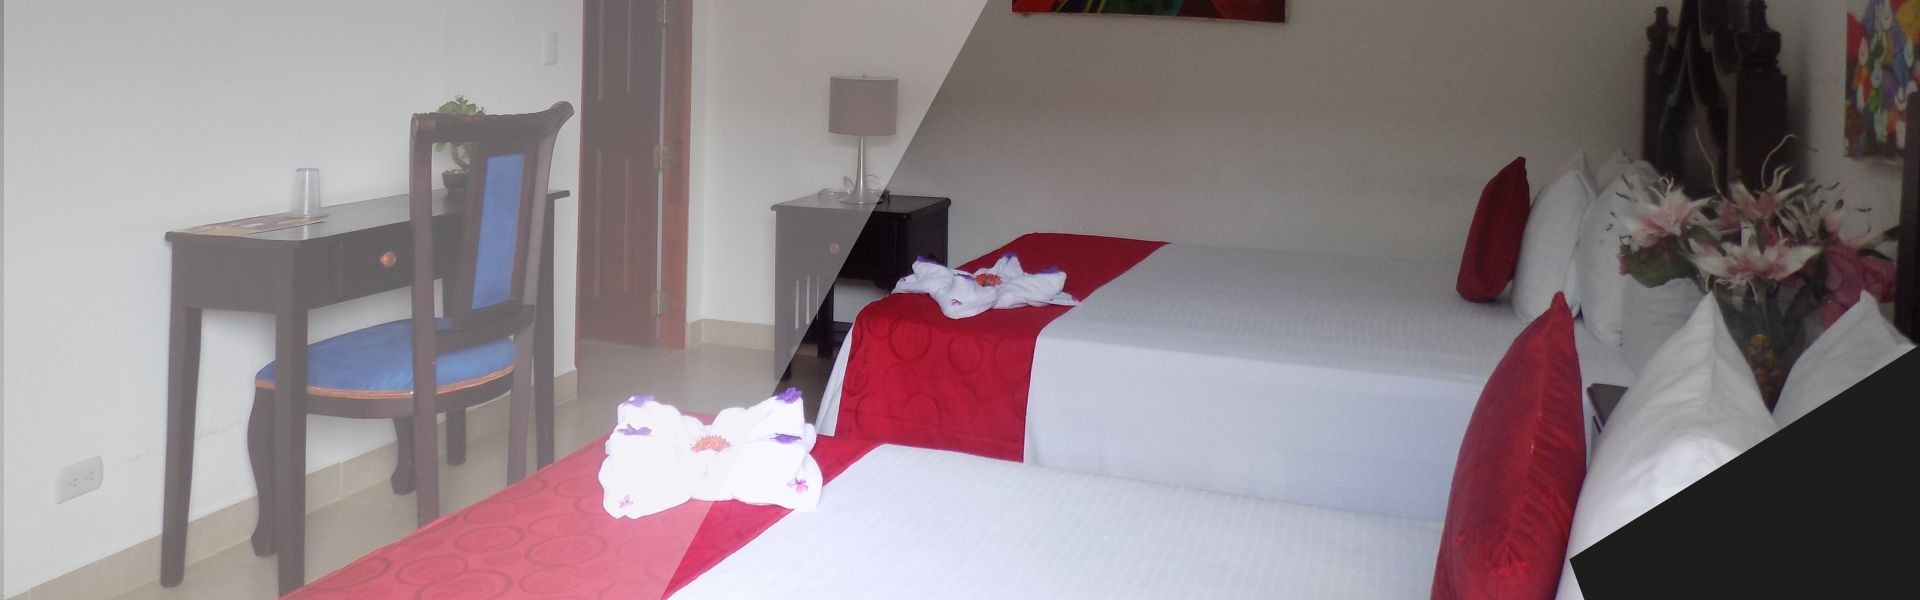 habitación doble, confortable | Hotel los pinos Managua, Nicaragua